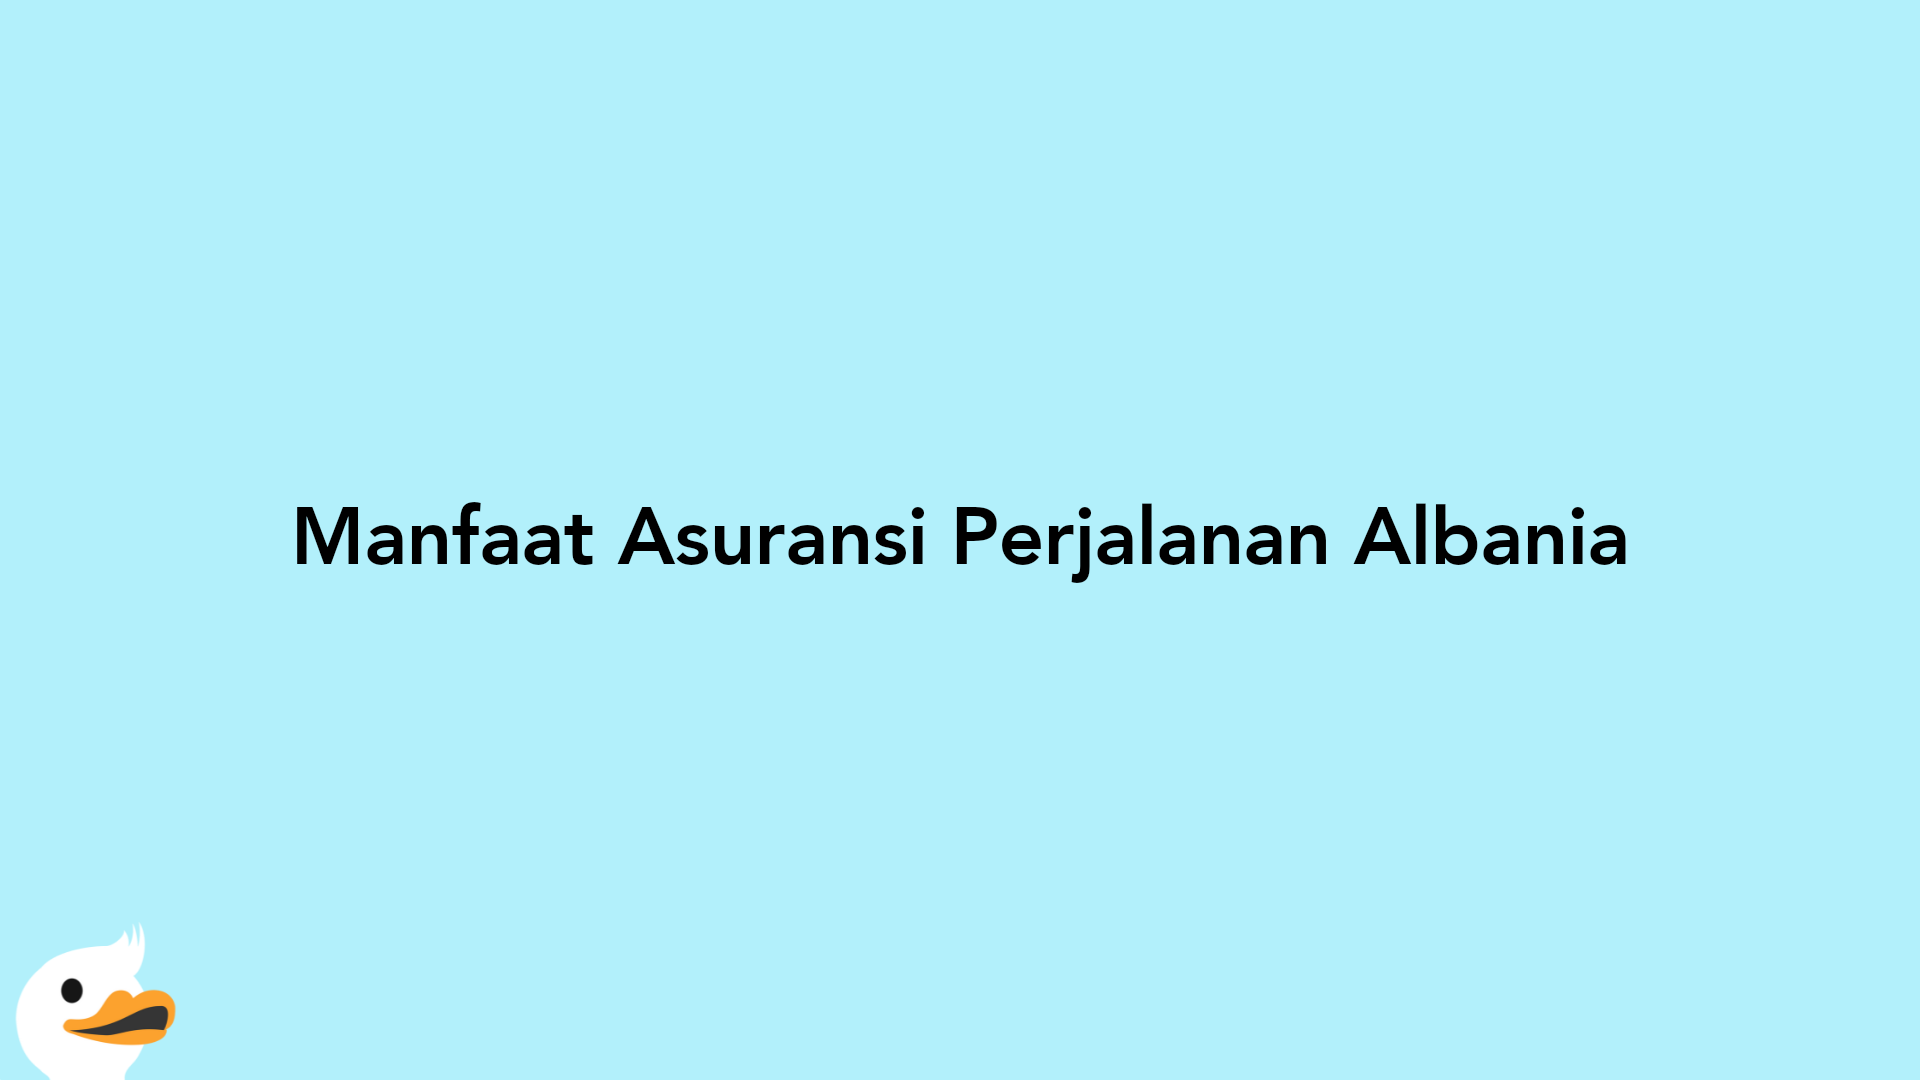 Manfaat Asuransi Perjalanan Albania